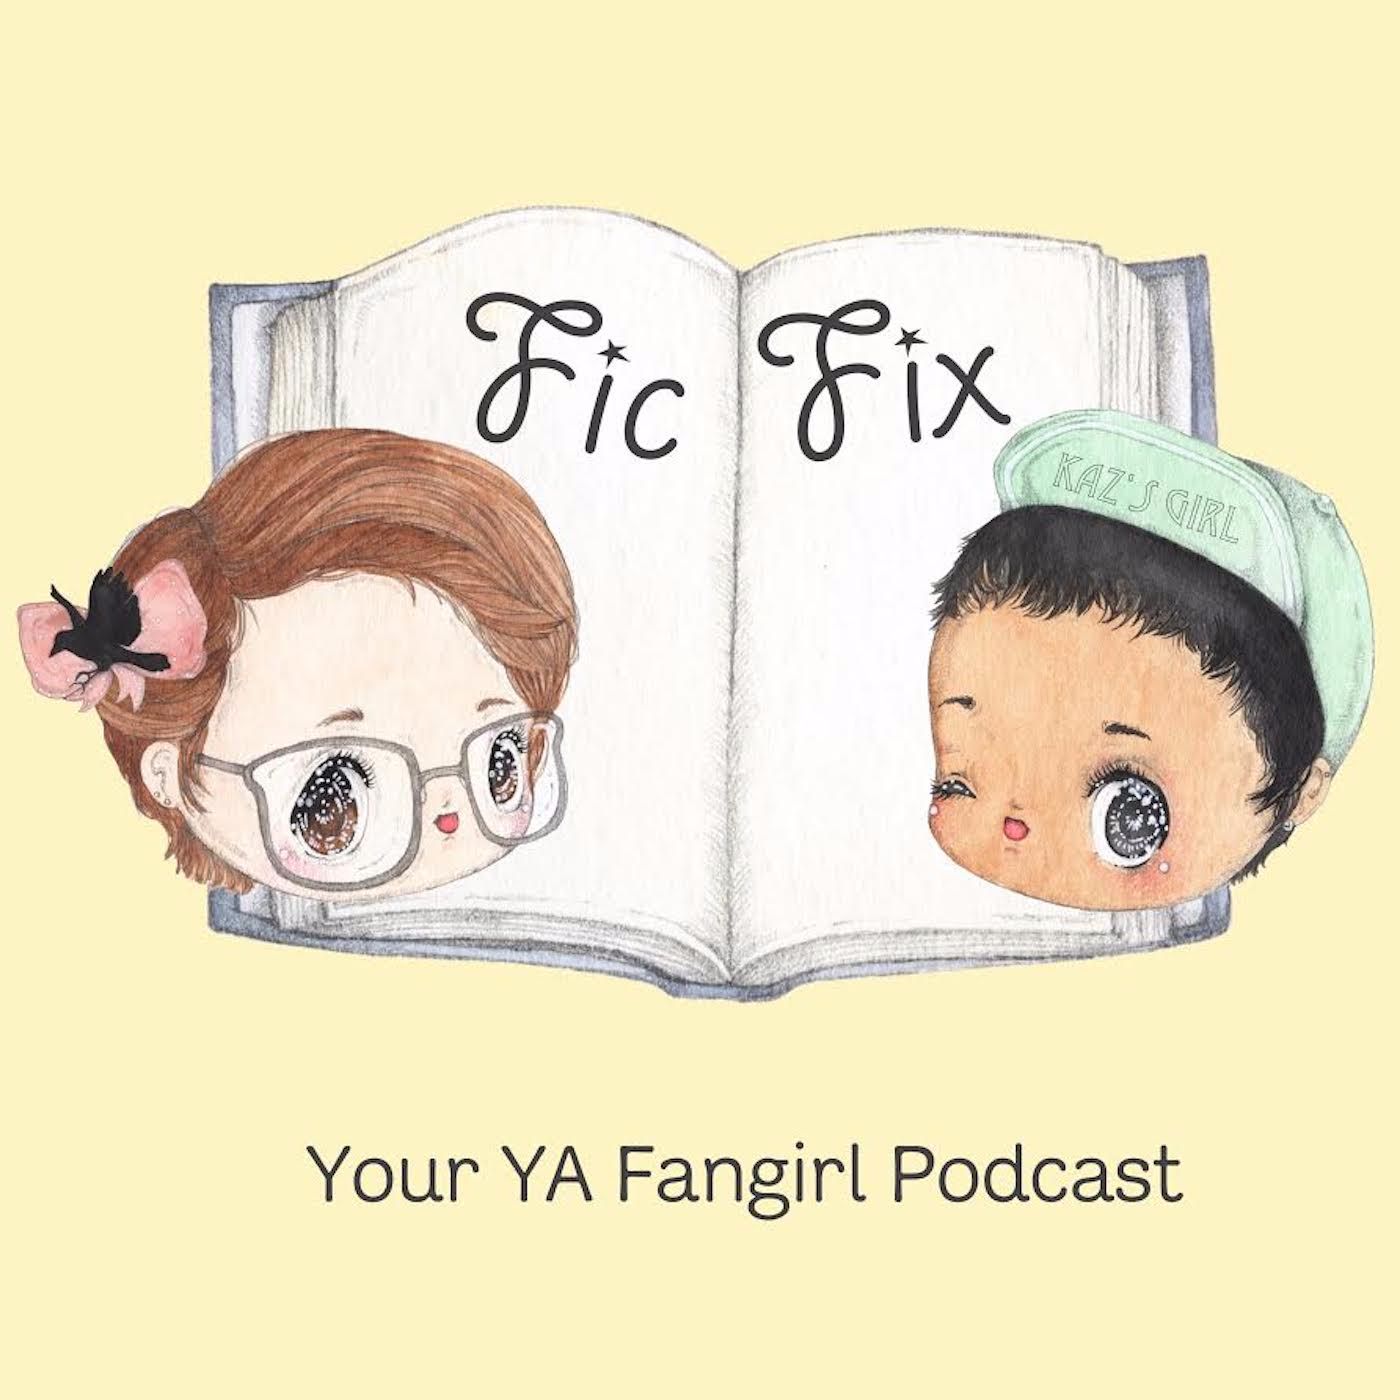 Fic Fix Podcast